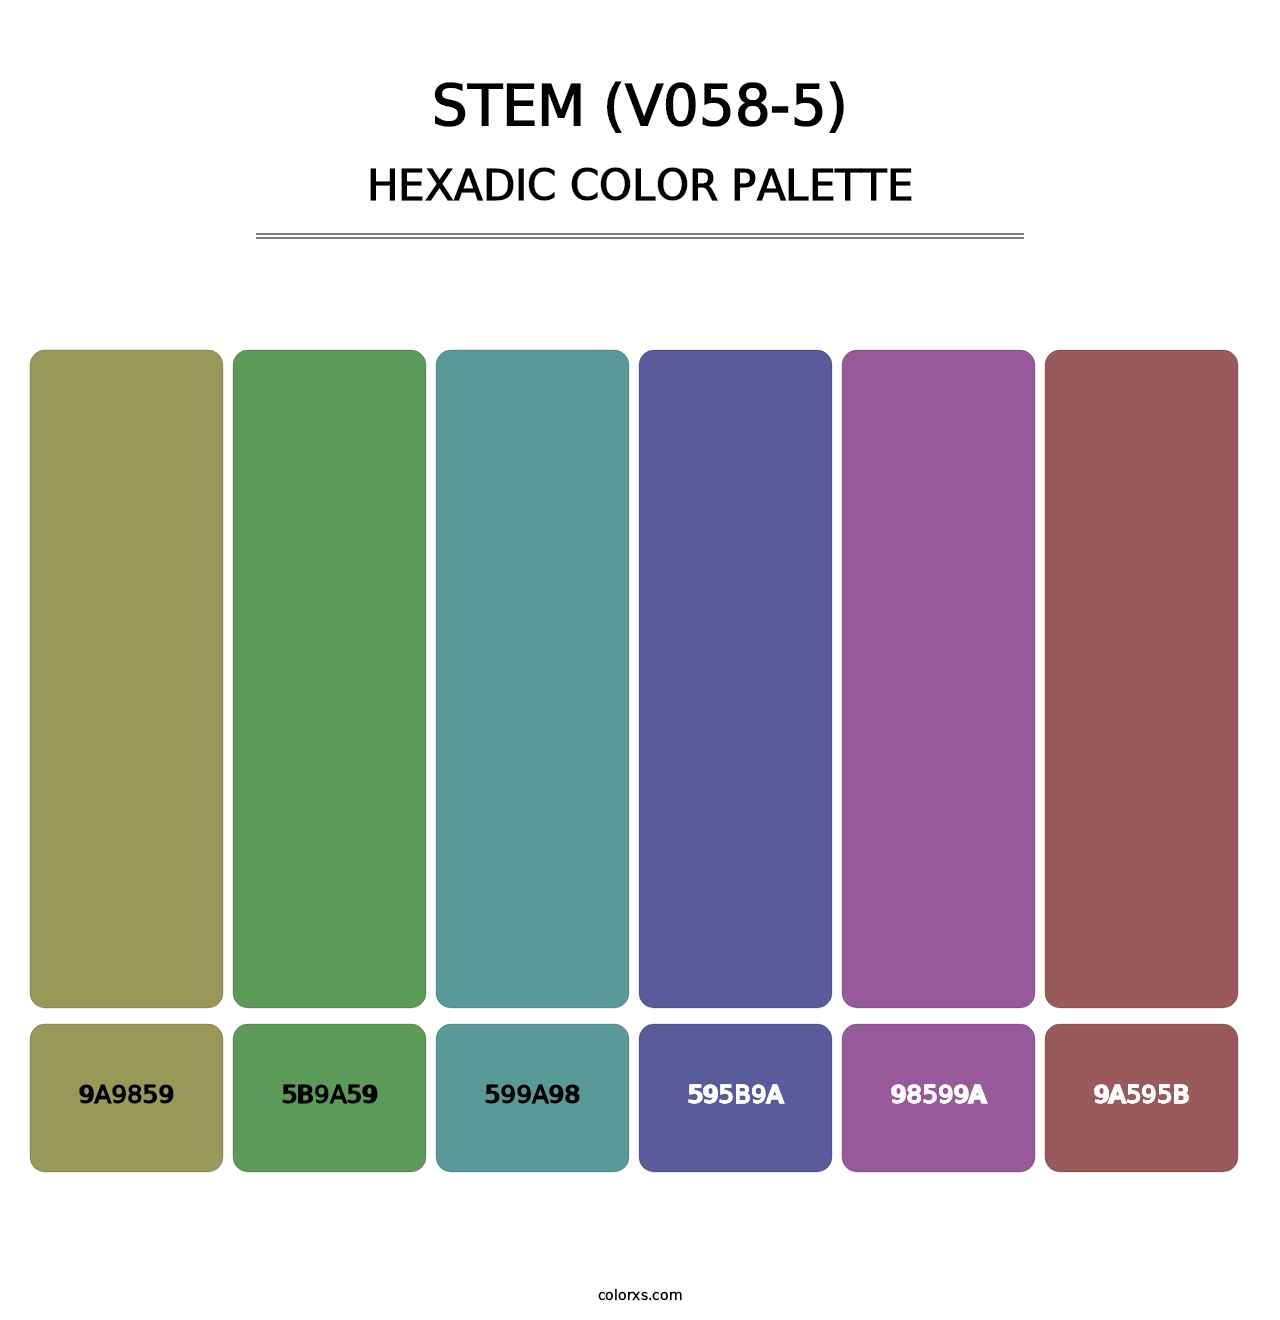 Stem (V058-5) - Hexadic Color Palette